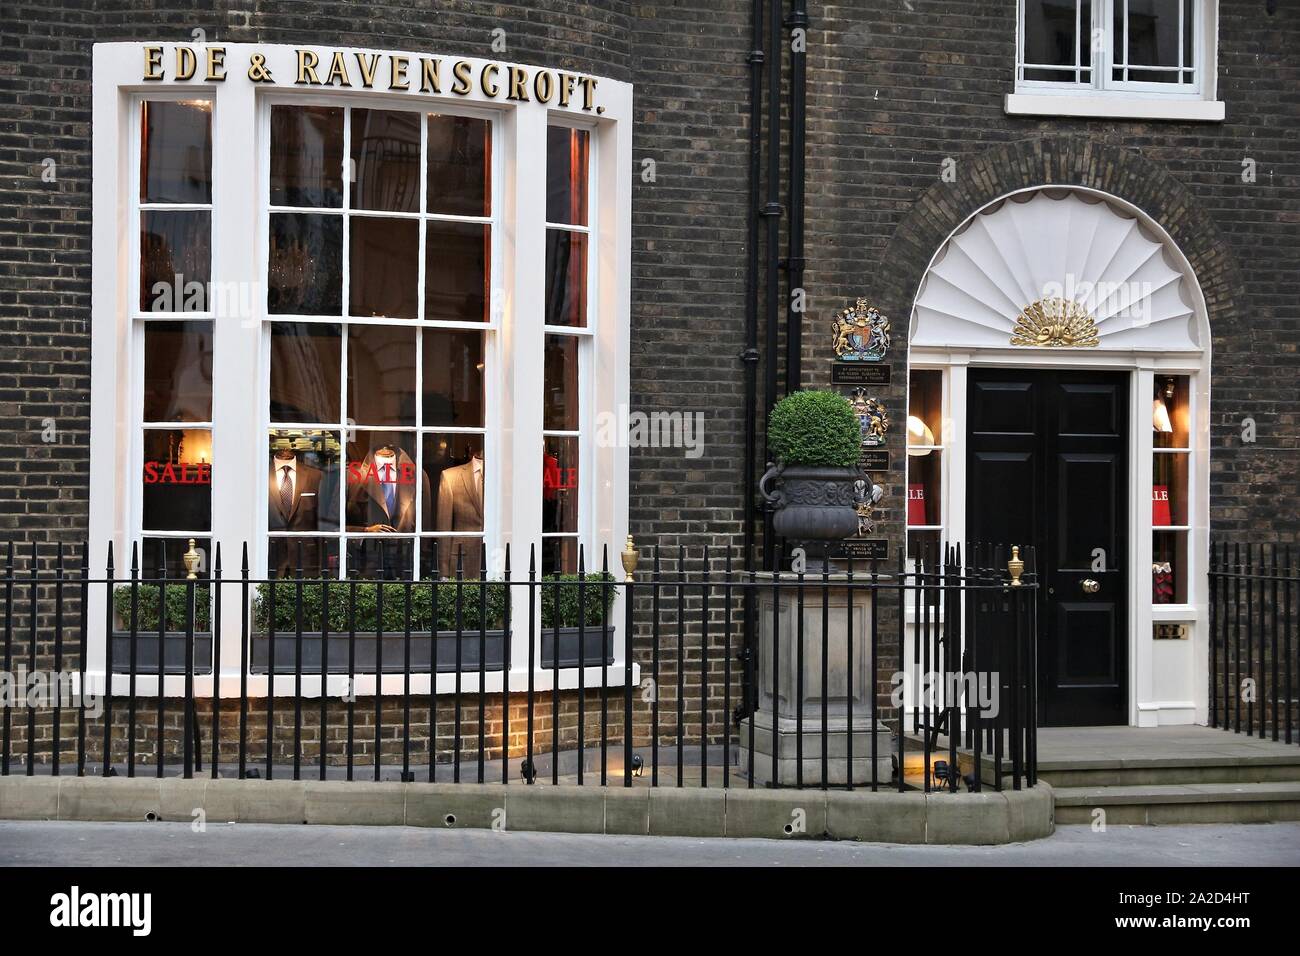 Londres, UK - 6 juillet 2016 : Savile Row bespoke couture magasins à Londres. Bond Street est une rue dans le quartier de Mayfair, traditionnellement connu pour tailleurs. Banque D'Images